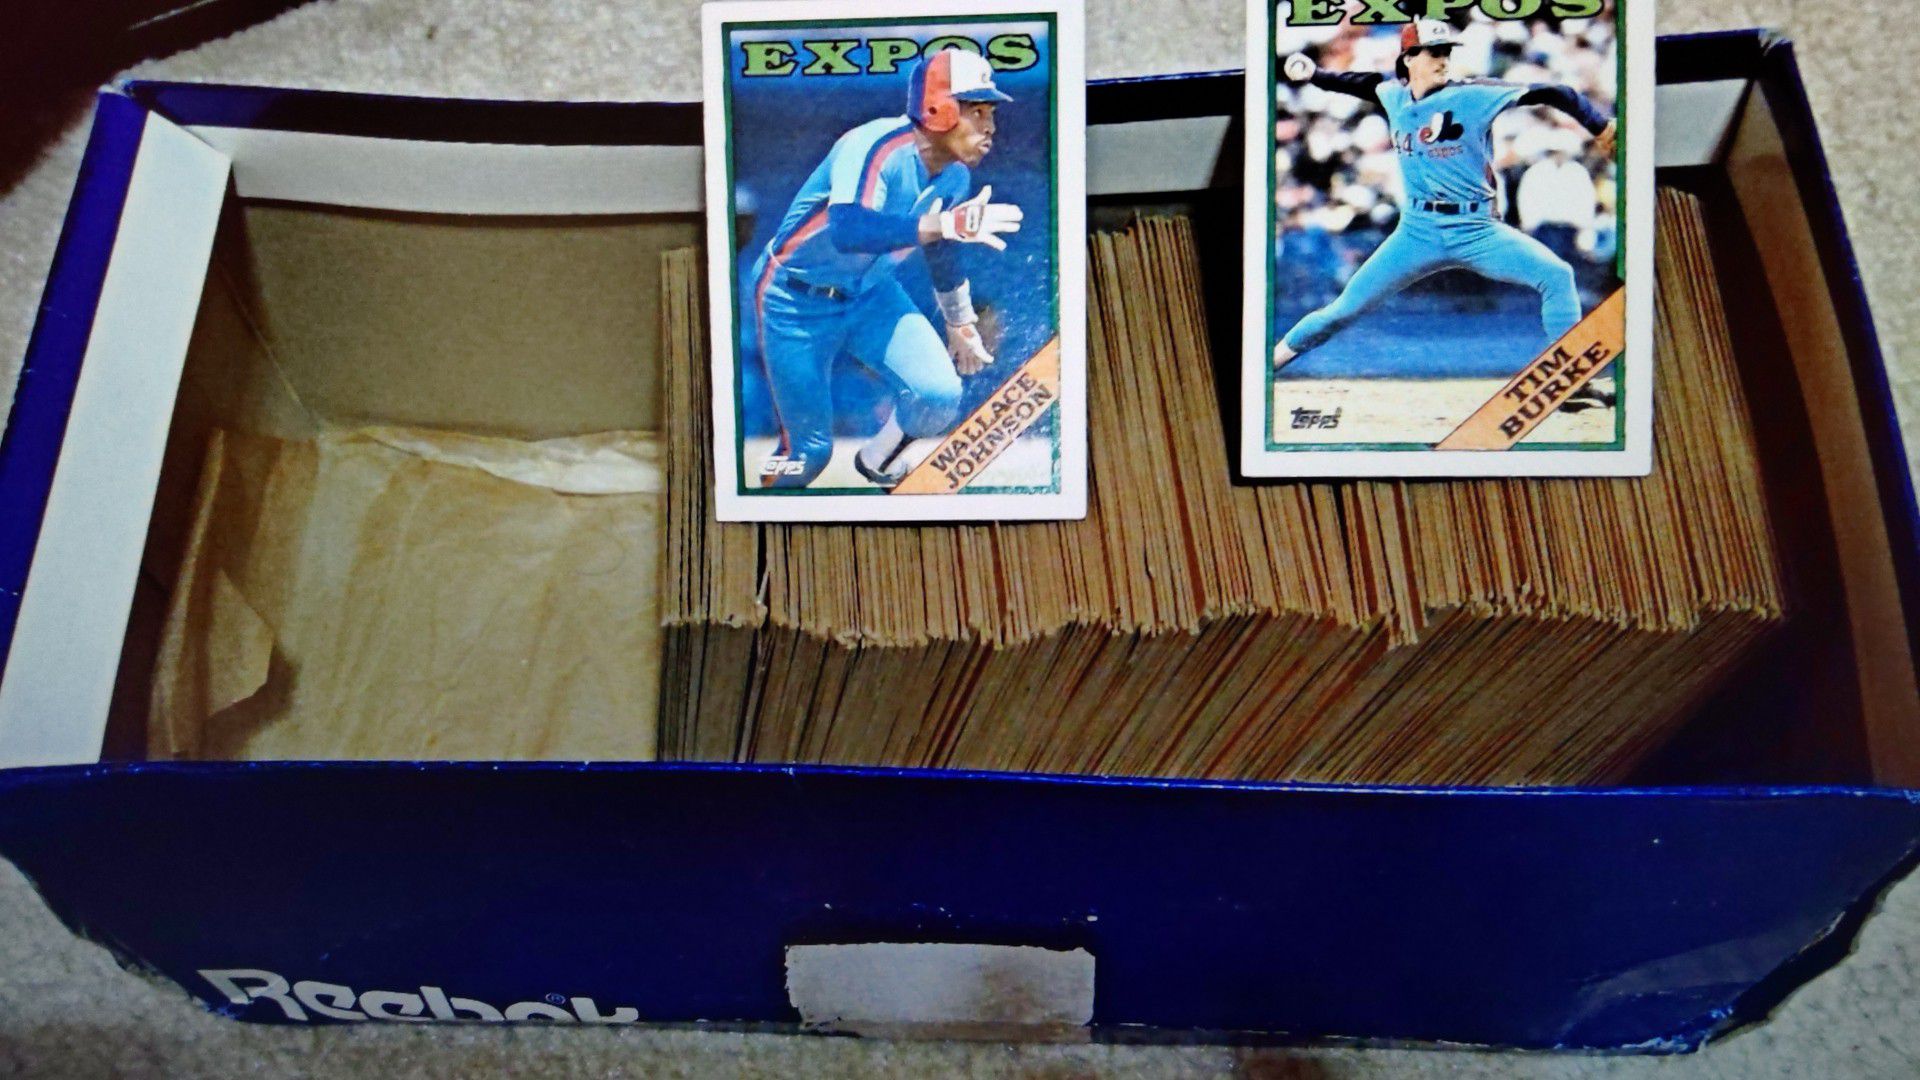 1988 Topps baseball set of 356 cards